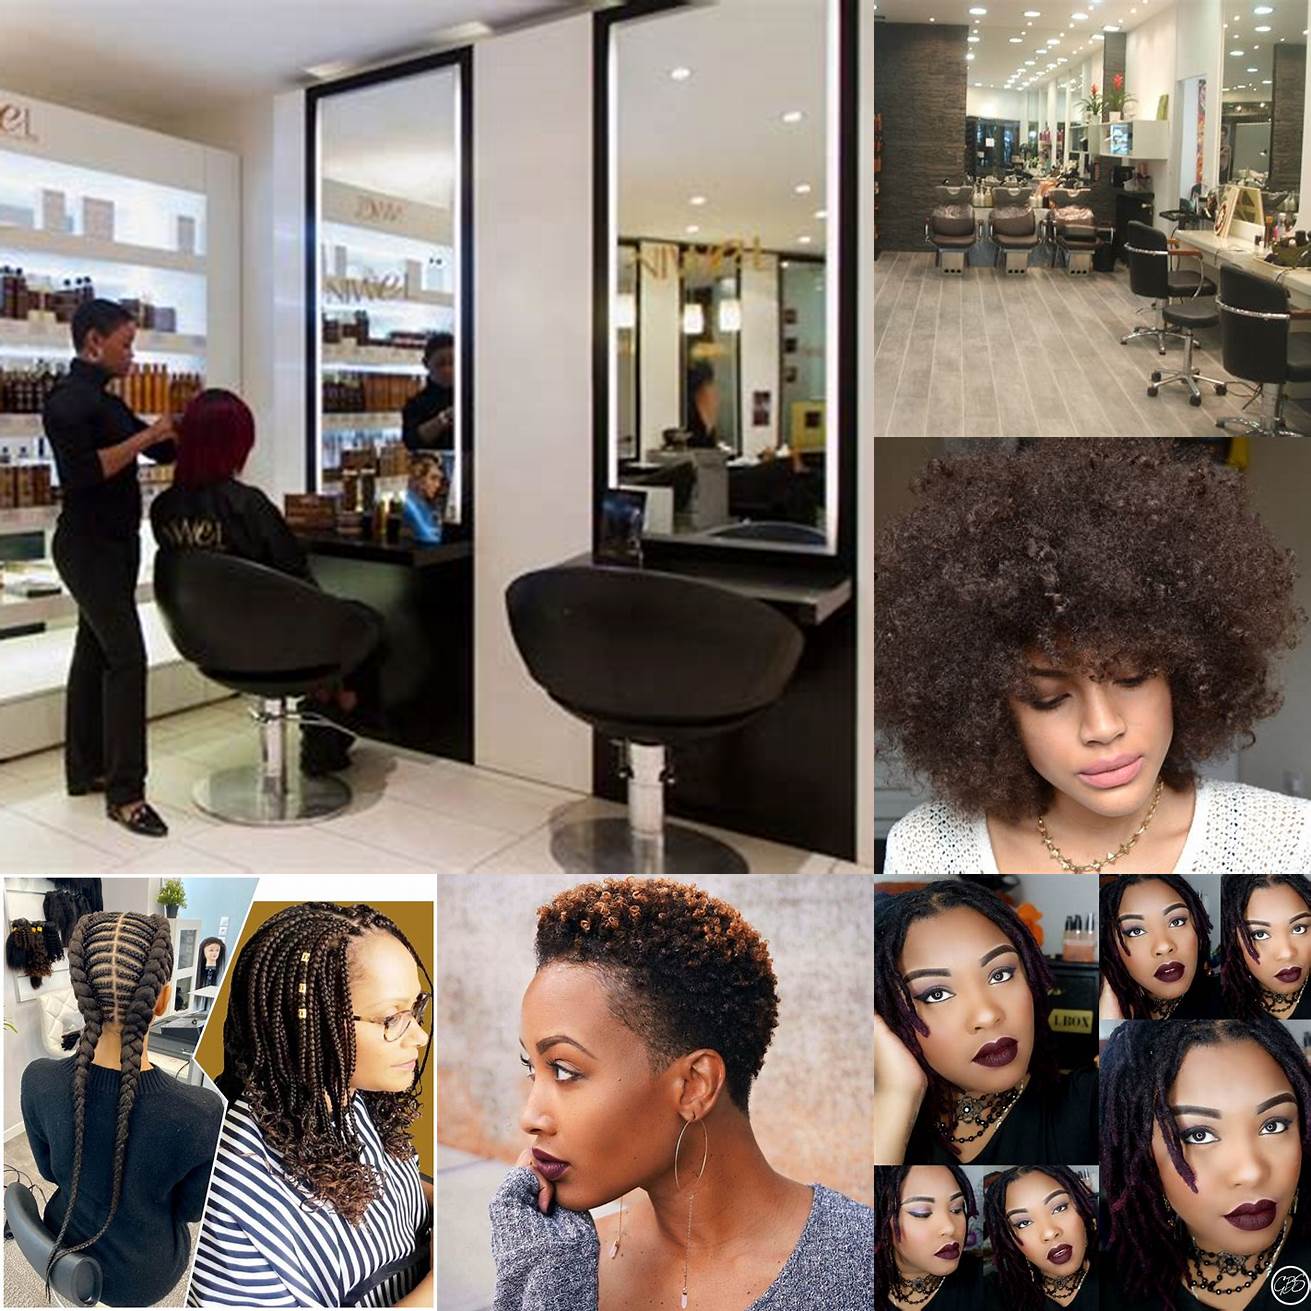 Je recommande vivement Afro Coiffure Oerlikon Le salon est très propre et bien organisé et les coiffeurs sont très professionnels